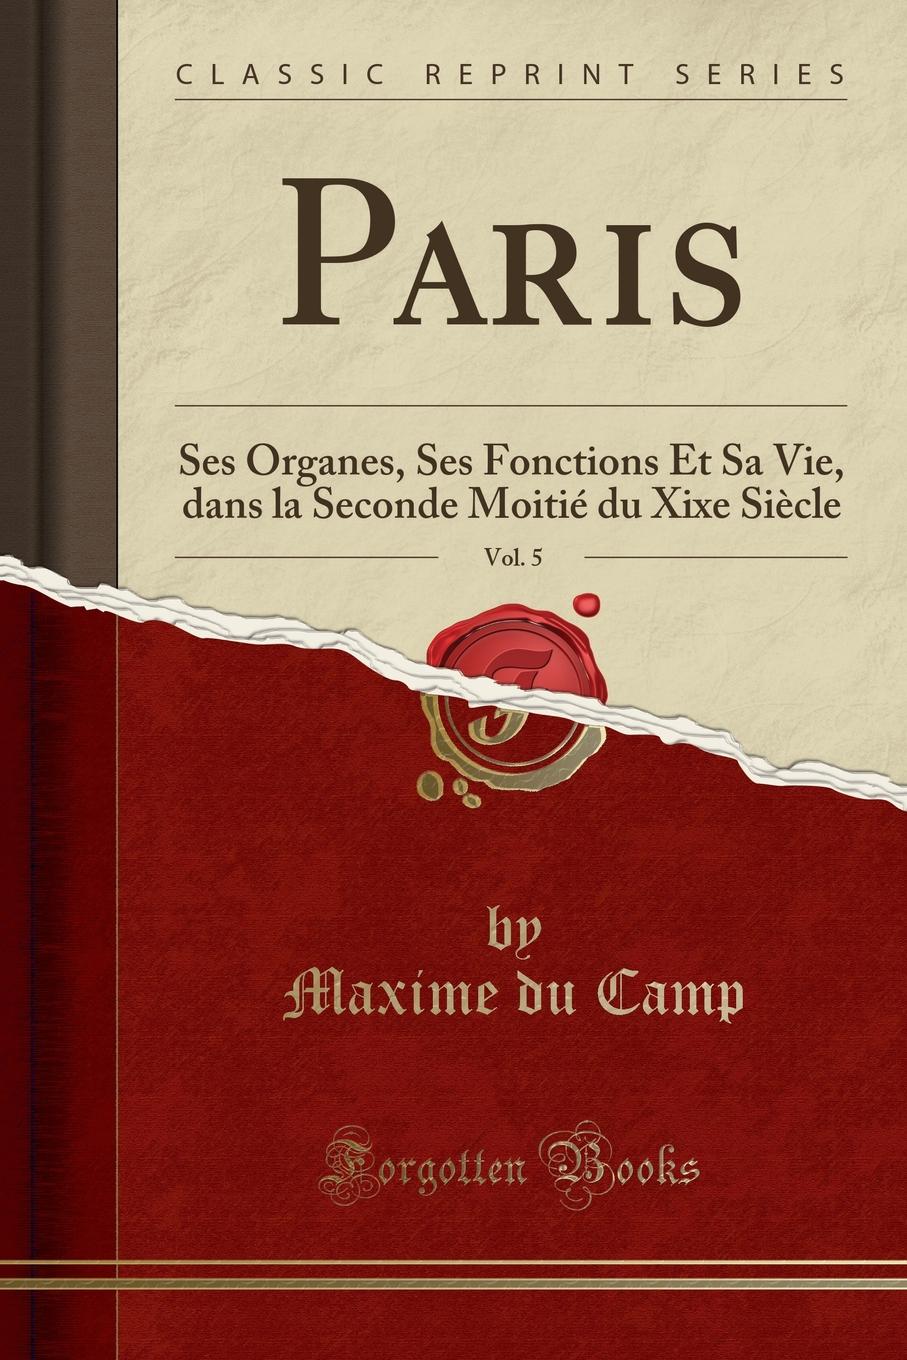 Paris, Vol. 5. Ses Organes, Ses Fonctions Et Sa Vie, dans la Seconde Moitie du Xixe Siecle (Classic Reprint)